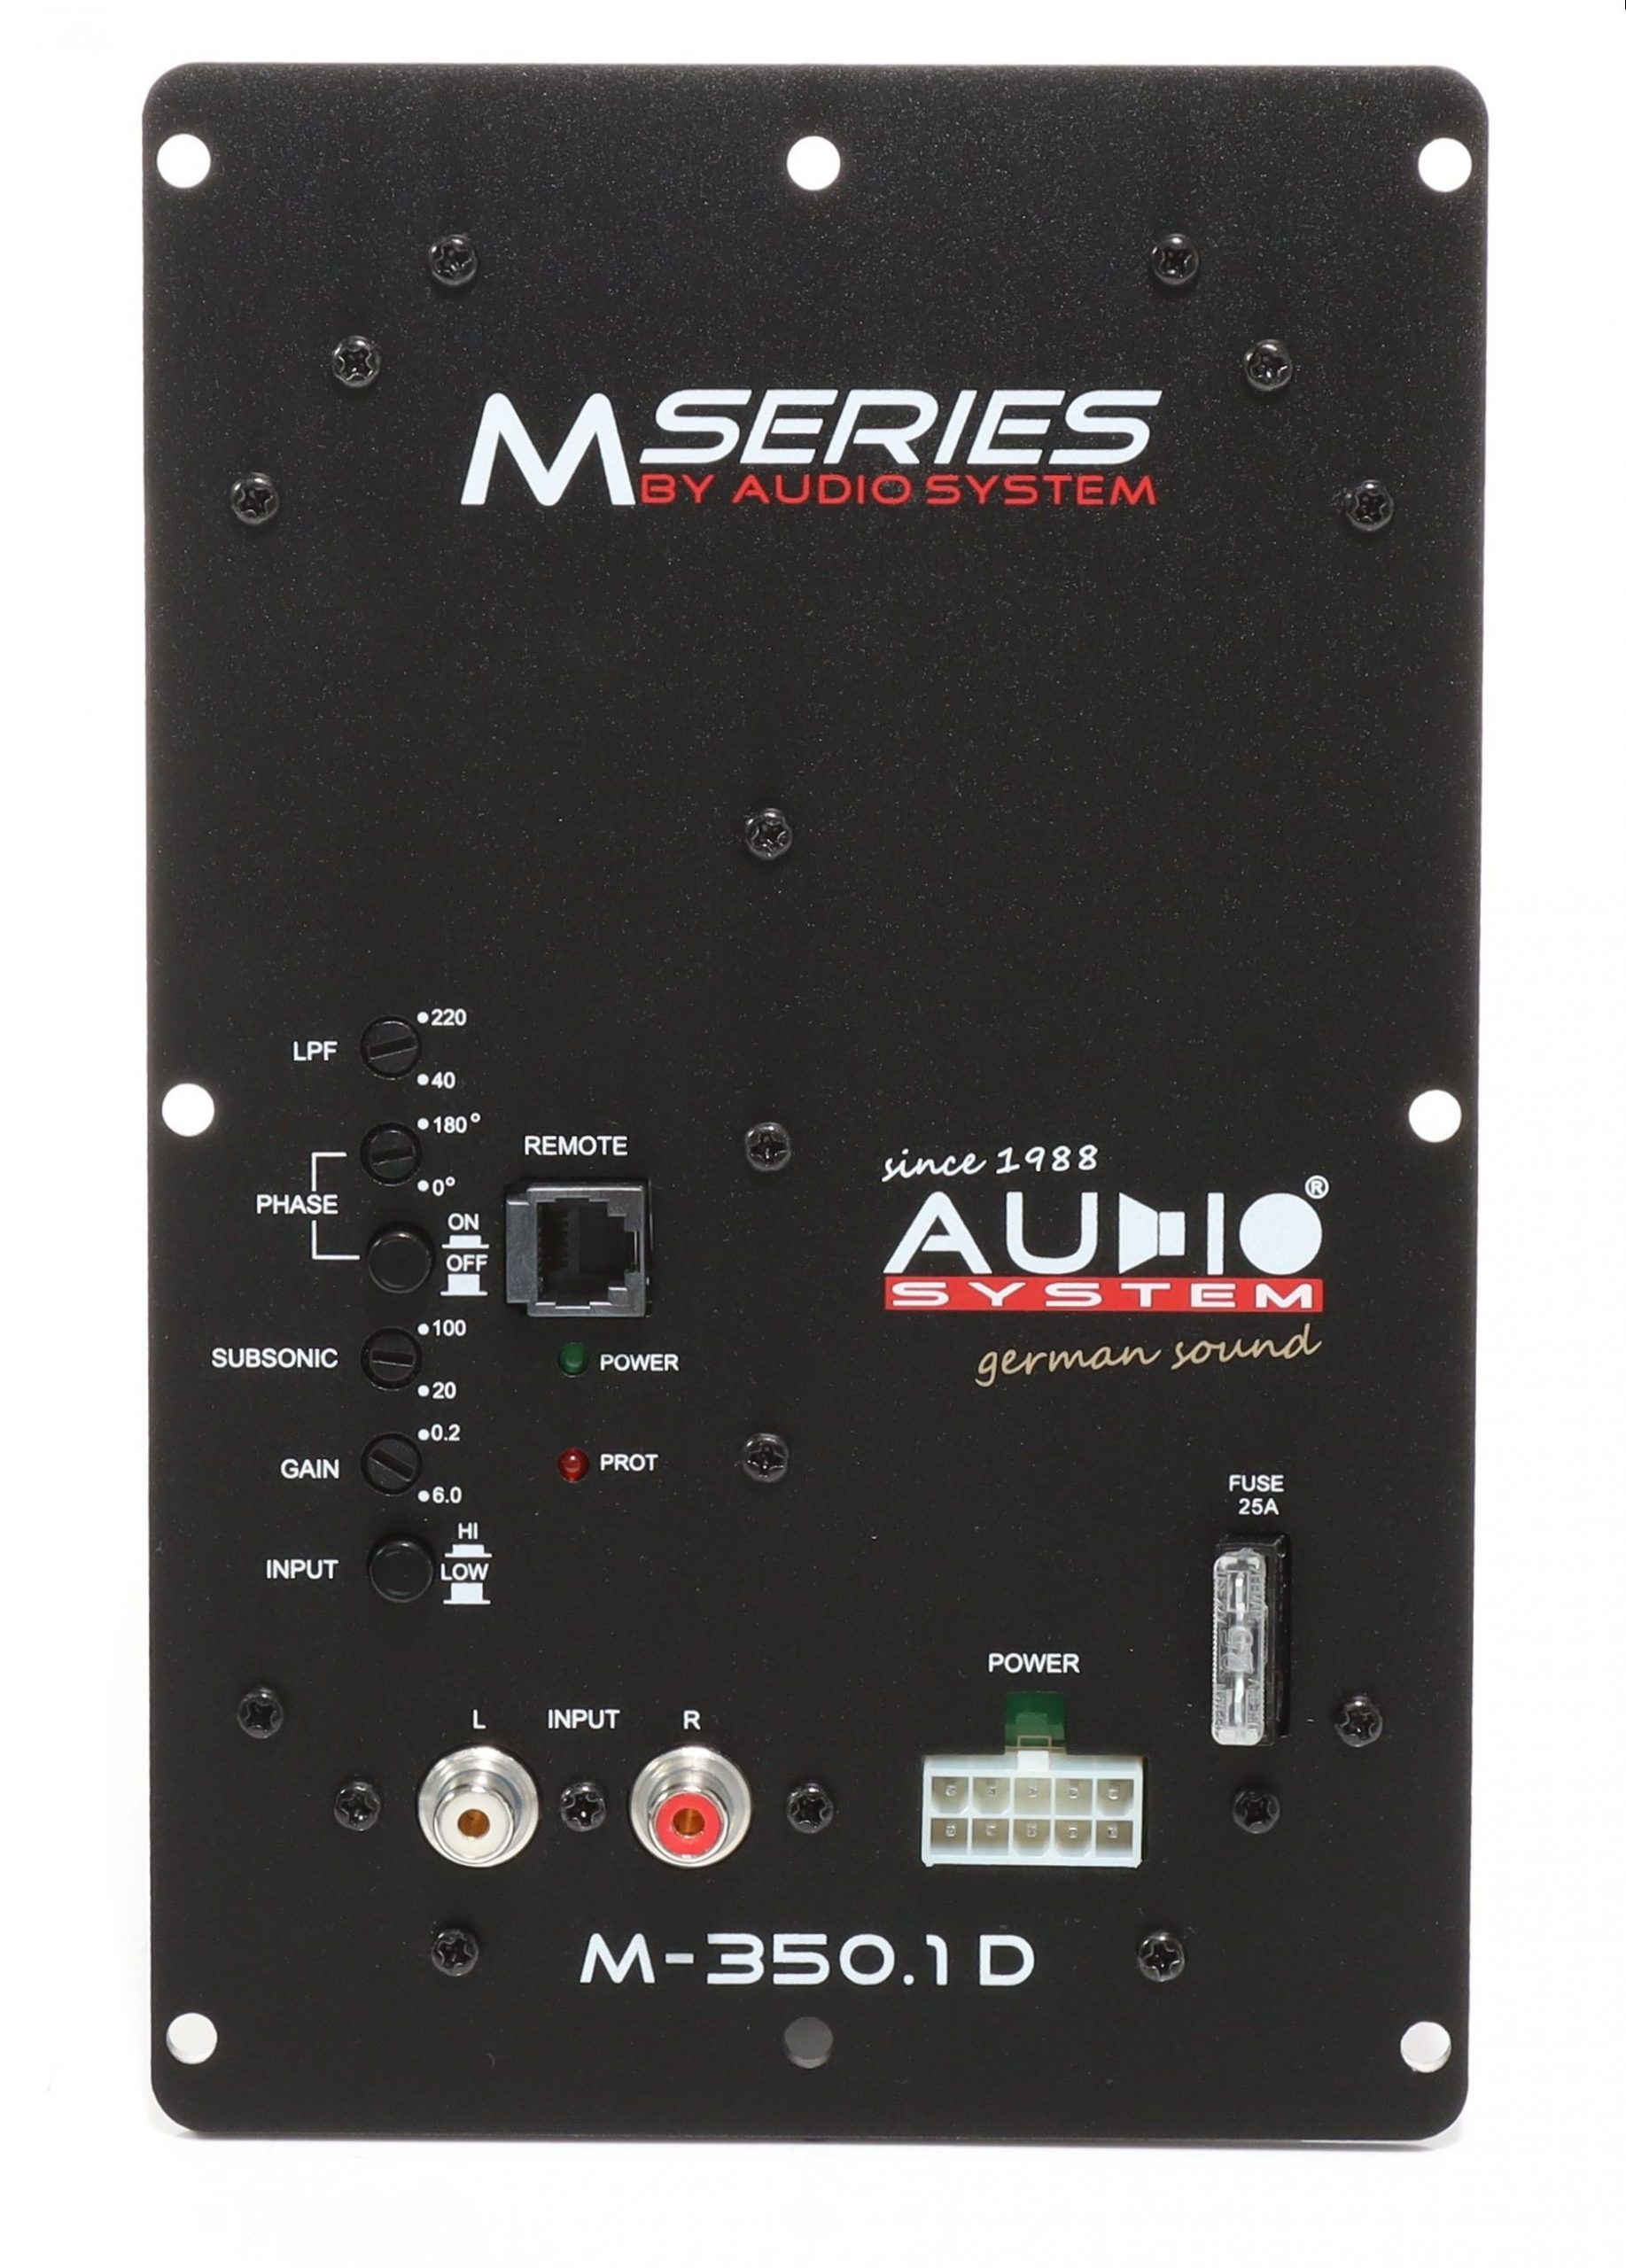 Audio System SUBFRAME M10 EVO ACTIVE 350 EVO Reserverad aktiv Subwoofer 400 Watt Bassgehäuse Bassreflexgehäuse mit M10 EVO + Verstärker + M-350.1 D